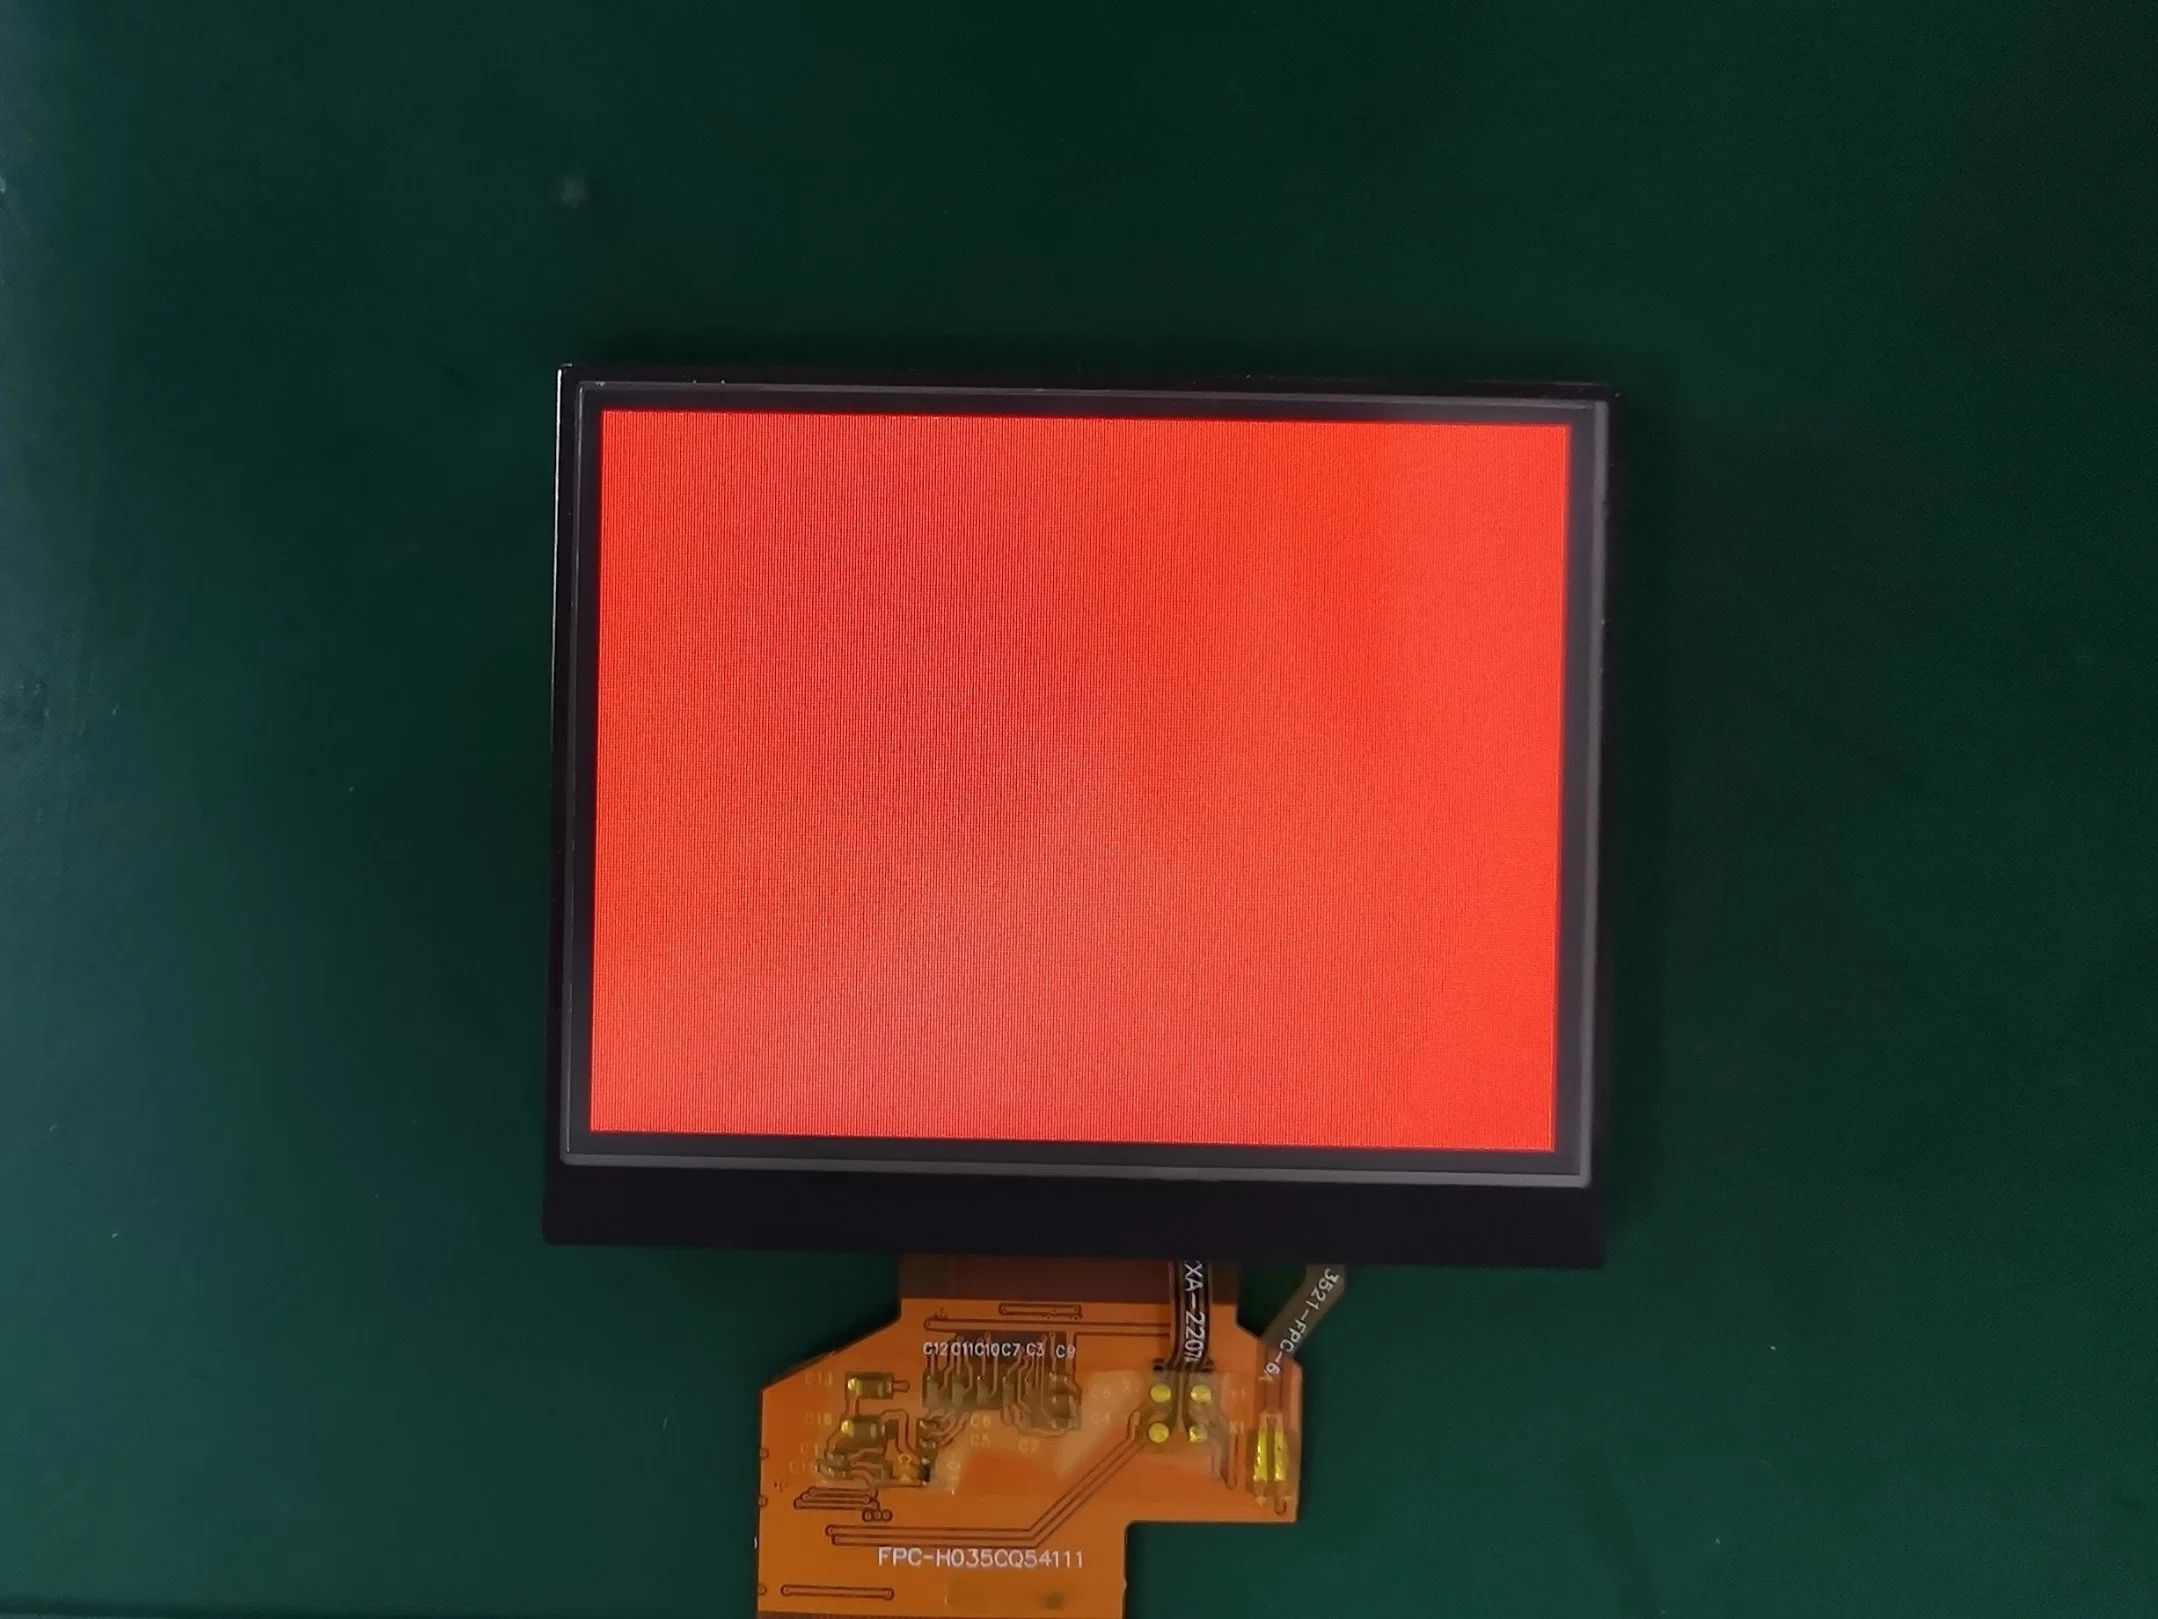 3,5-Zoll-LCD-54-poliges TFT-Display MIT 320 X 240 und 16,7m Farbtiefen Display mit resistiven Touchscreen